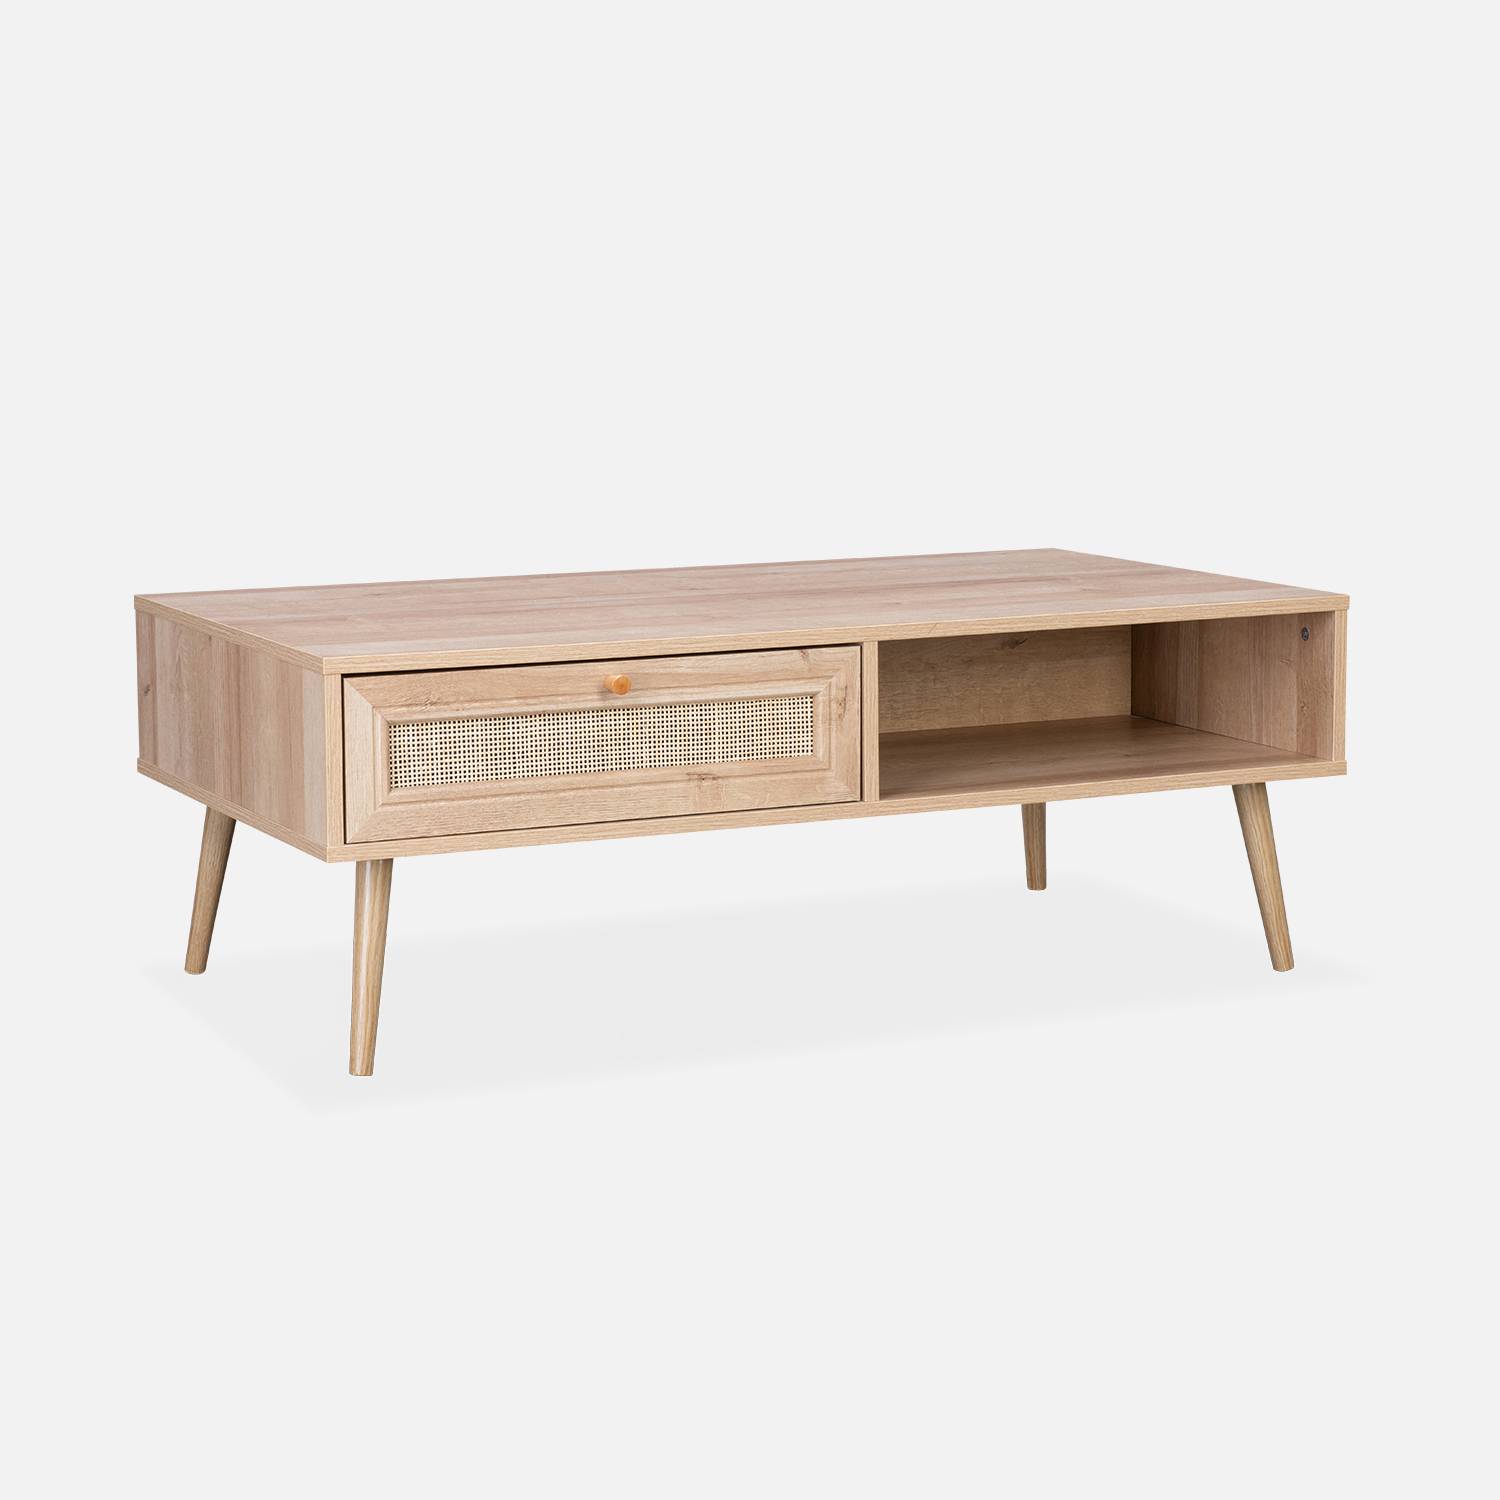 Table basse en cannage 110 x 59 x 39 cm - Bohème - Naturel, 1 tiroir, 1 espace de rangement, pieds scandinaves Photo2